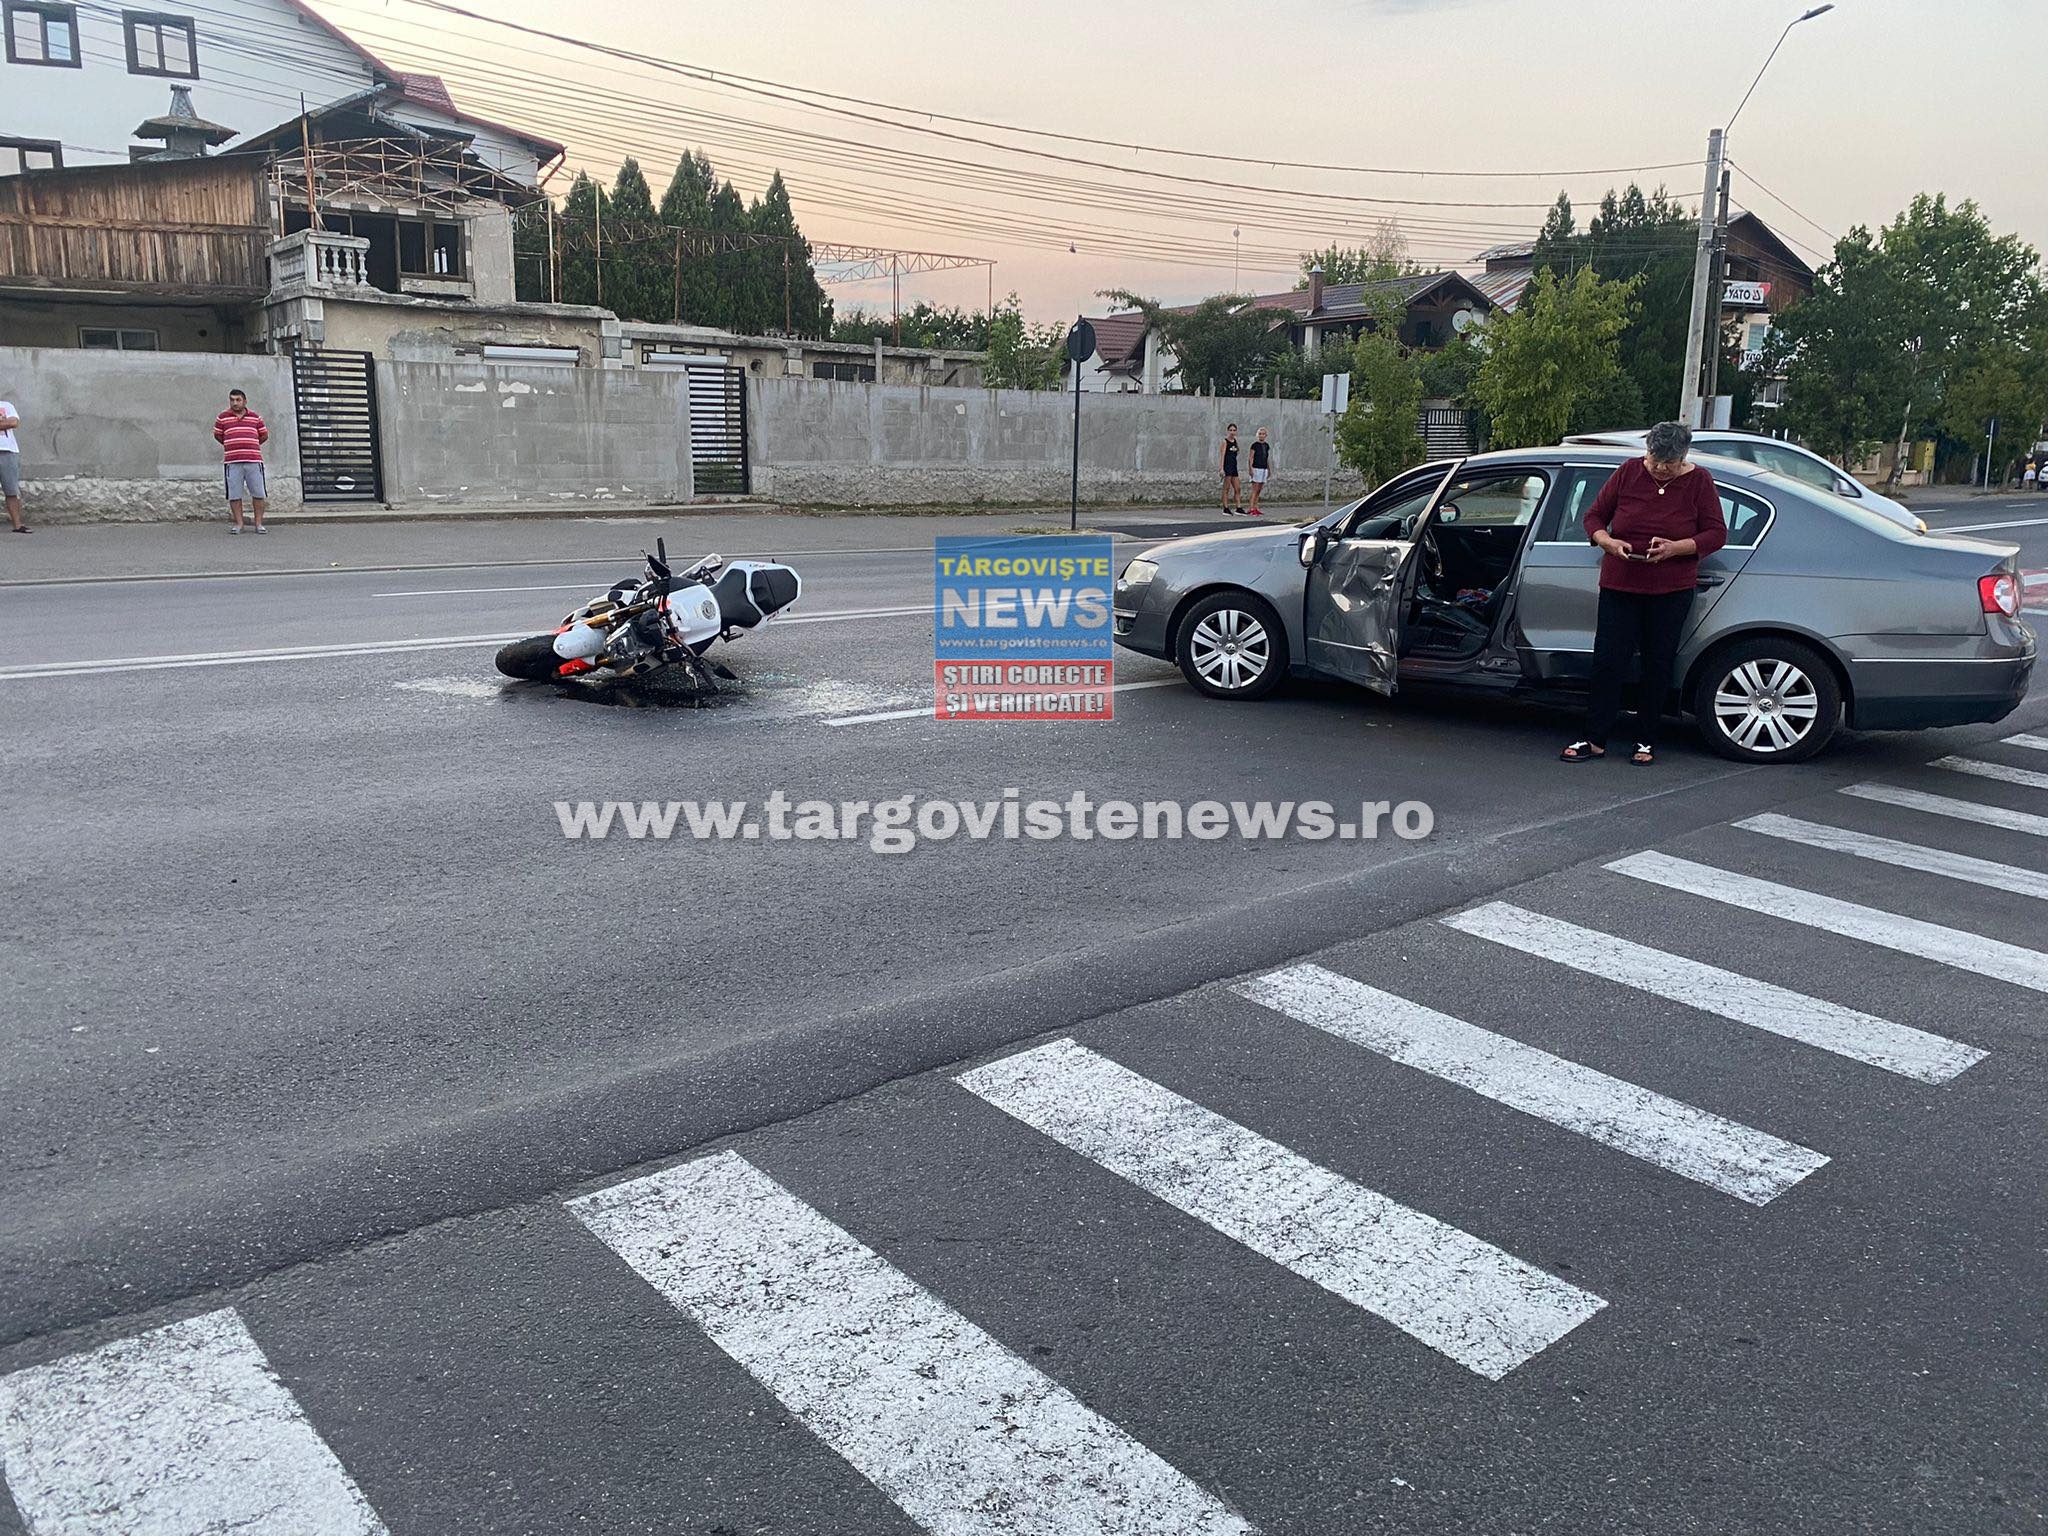 FOTO/VIDEO: Un şofer a accidentat un motociclist, la ieşirea din parcarea unui supermarket, în Târgovişte